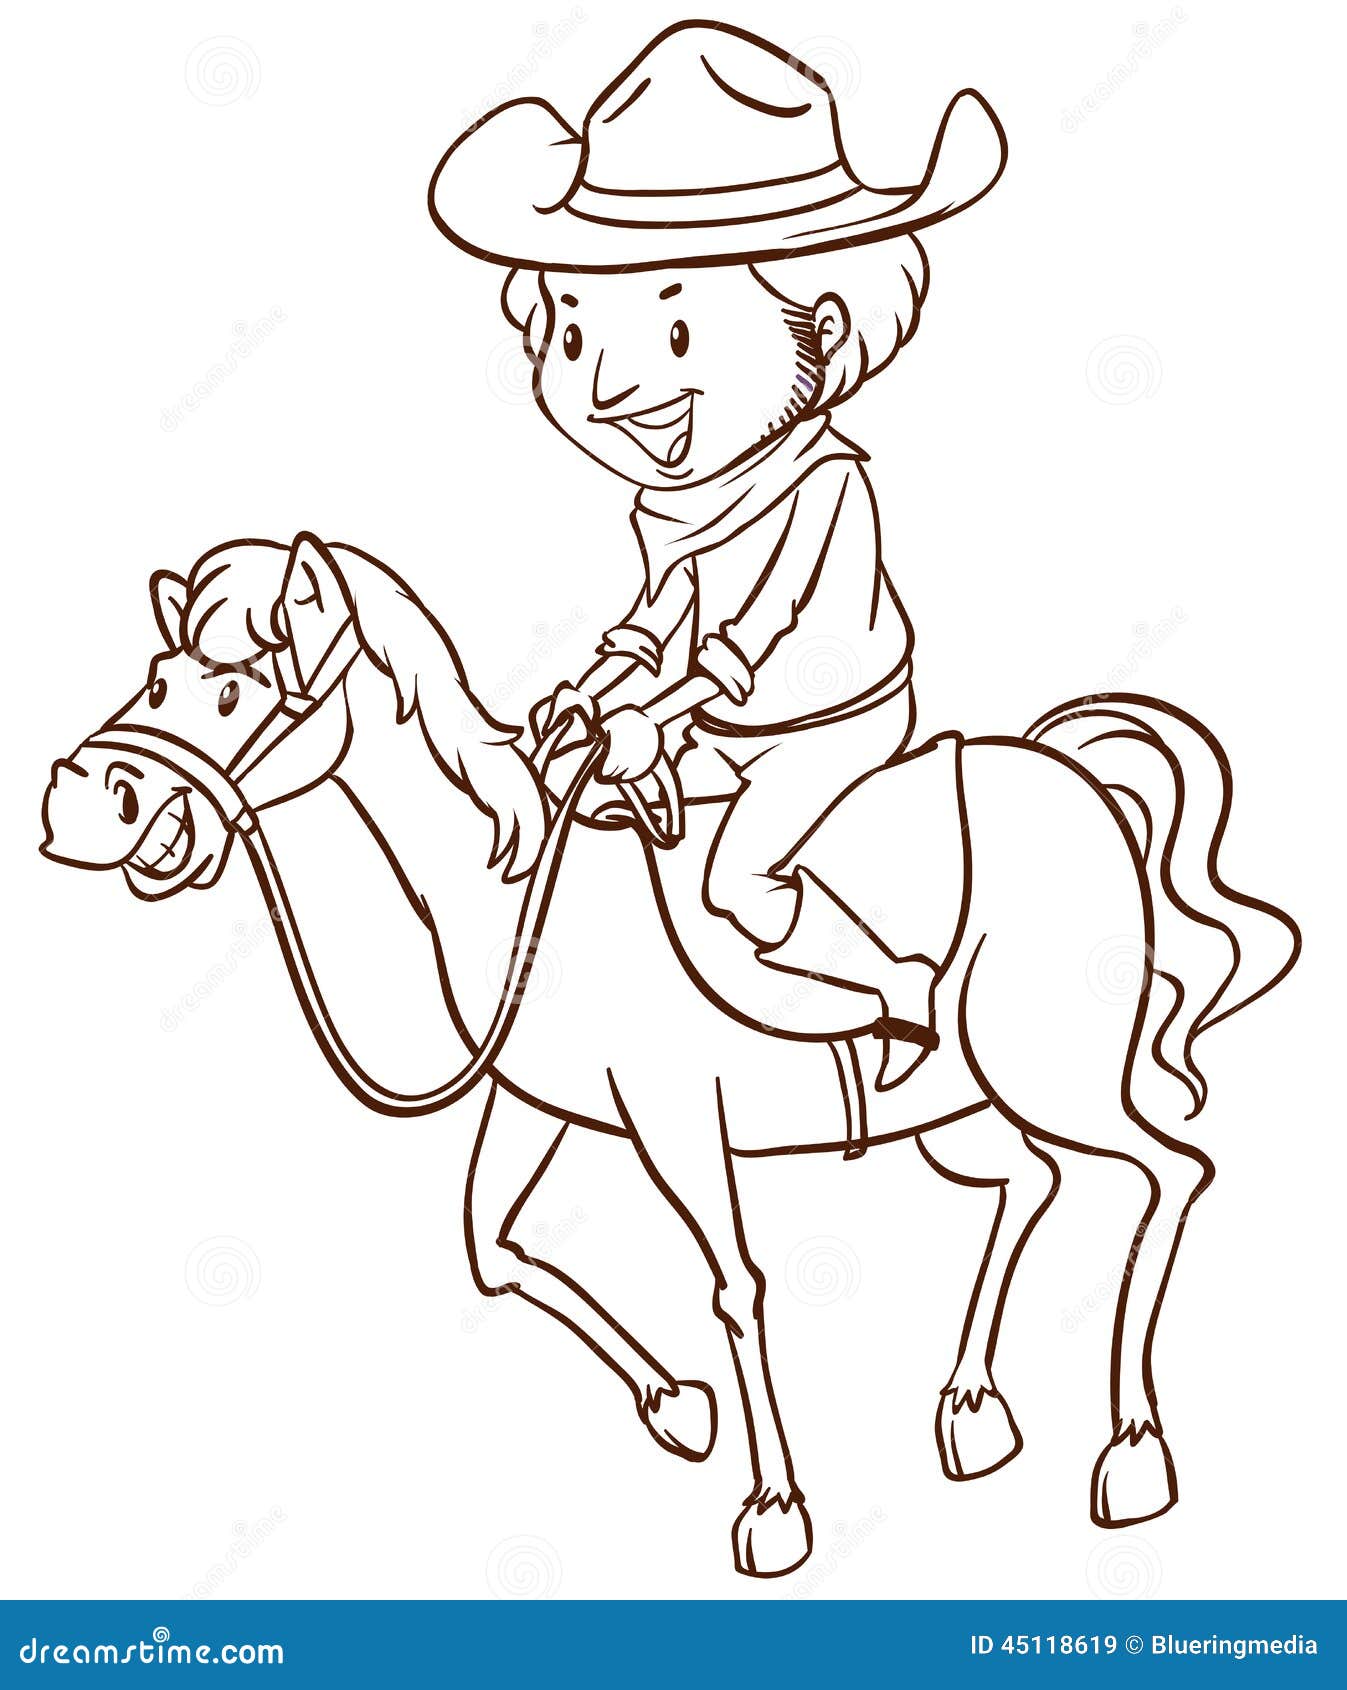 Un Dessin Simple D'un Cowboy Illustration de Vecteur ...